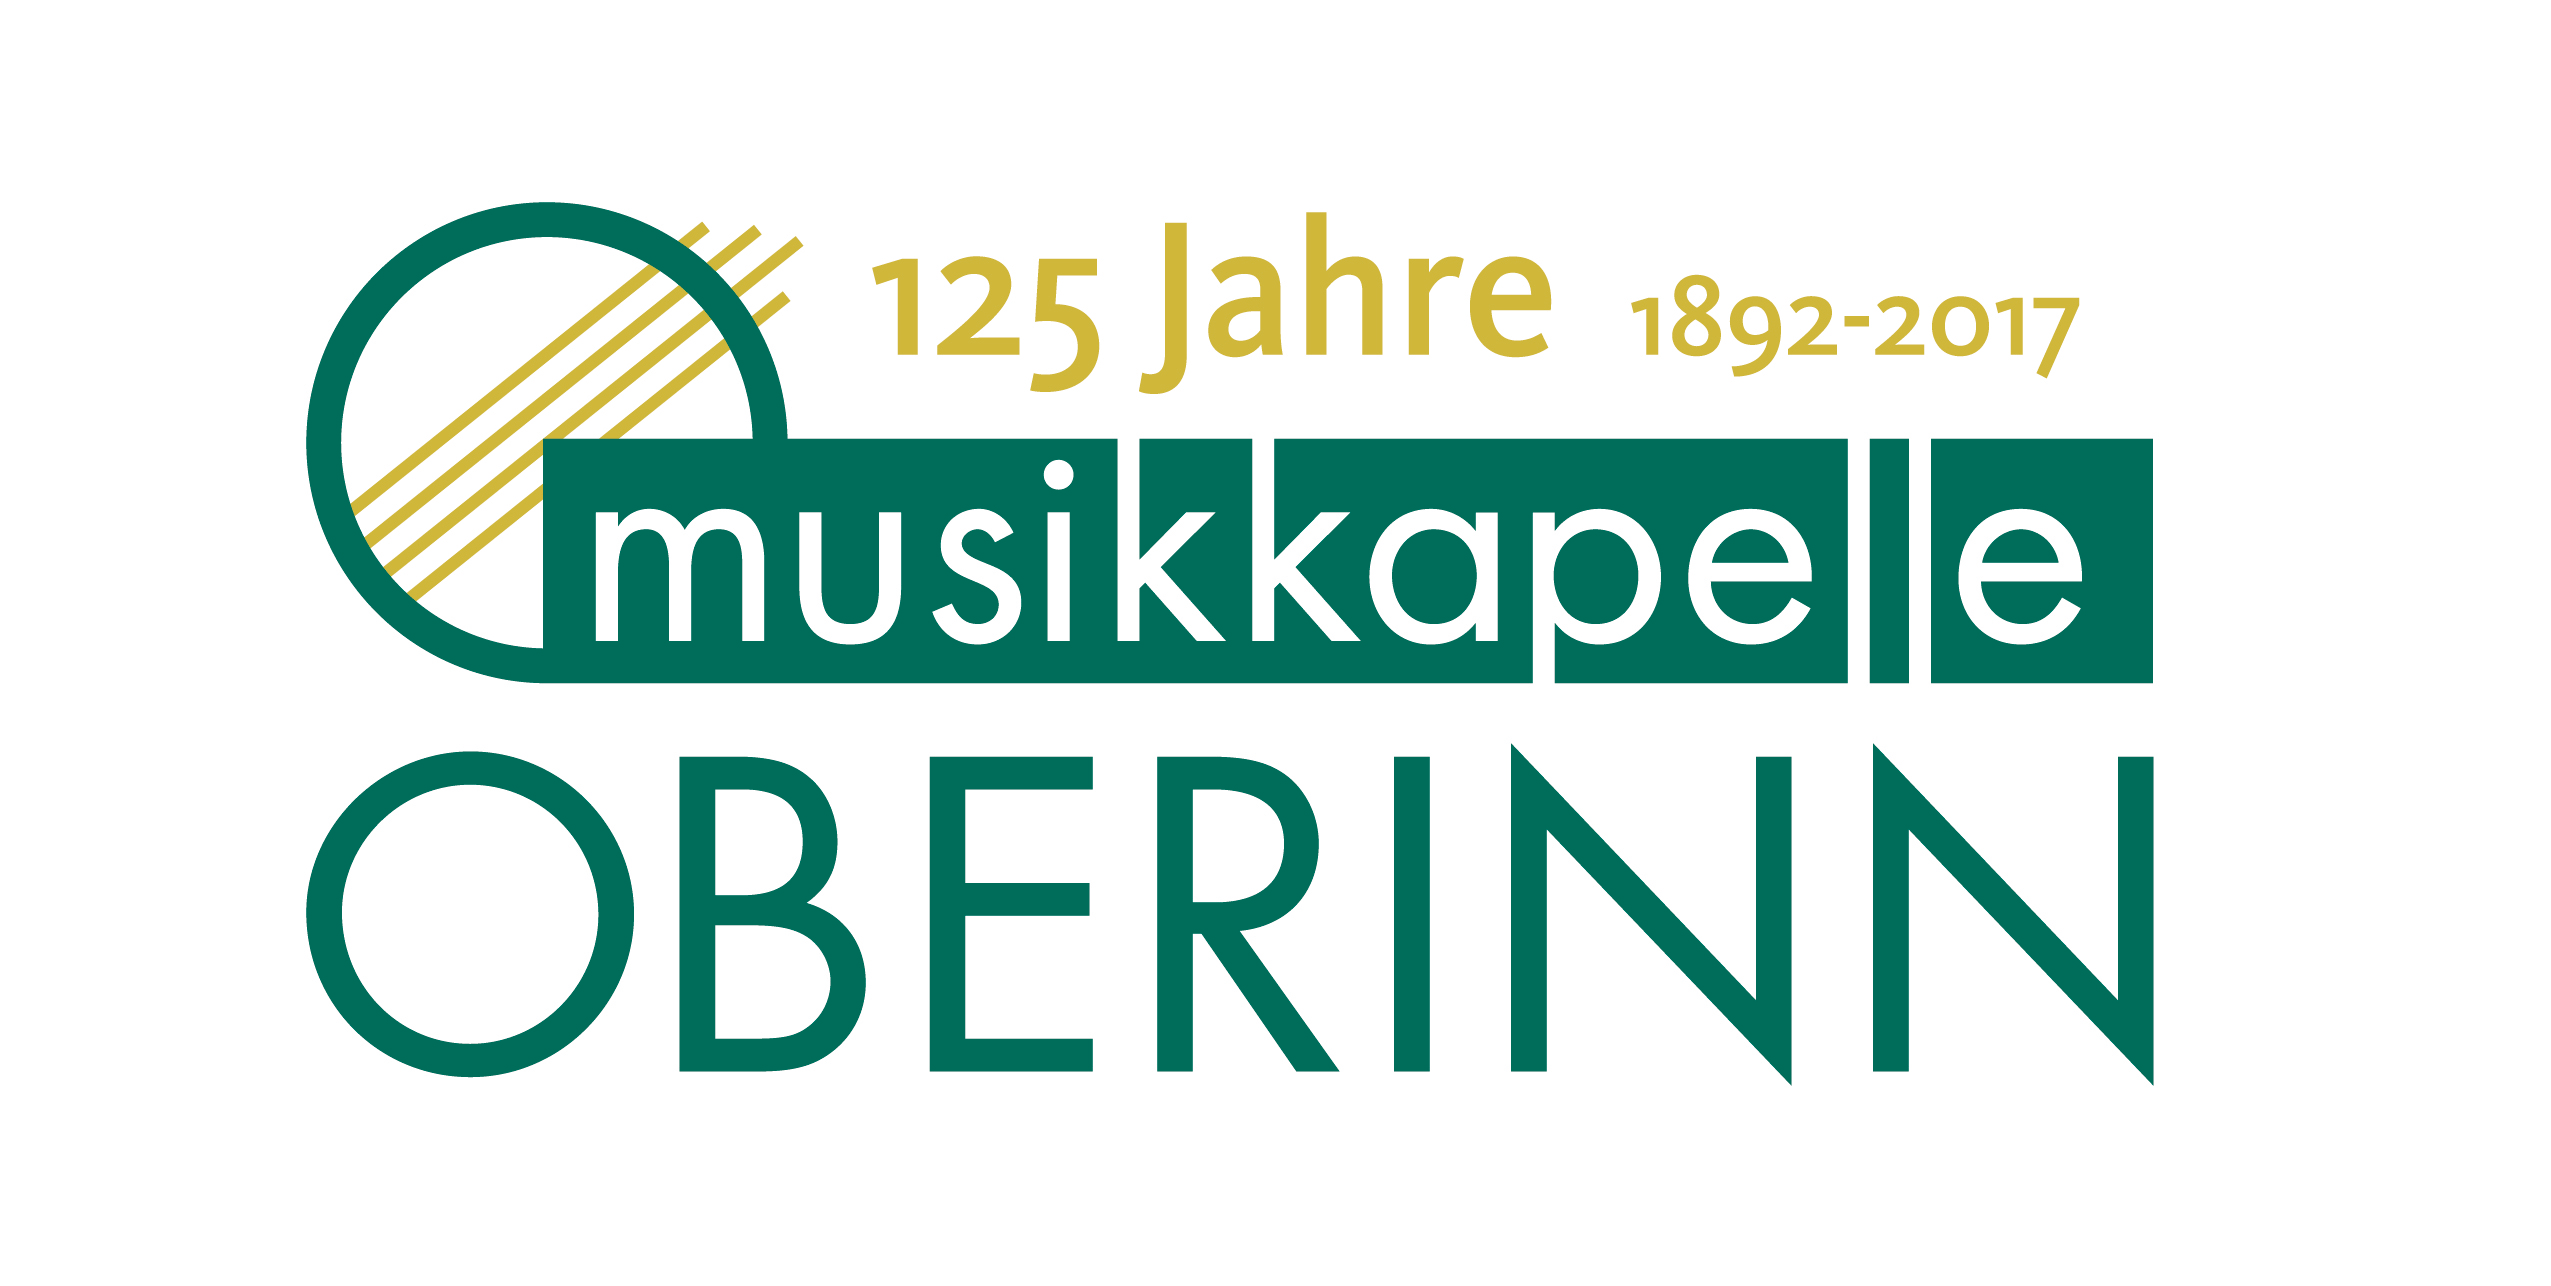 1892 – 2017 125 Jahre Musikkapelle Oberinn